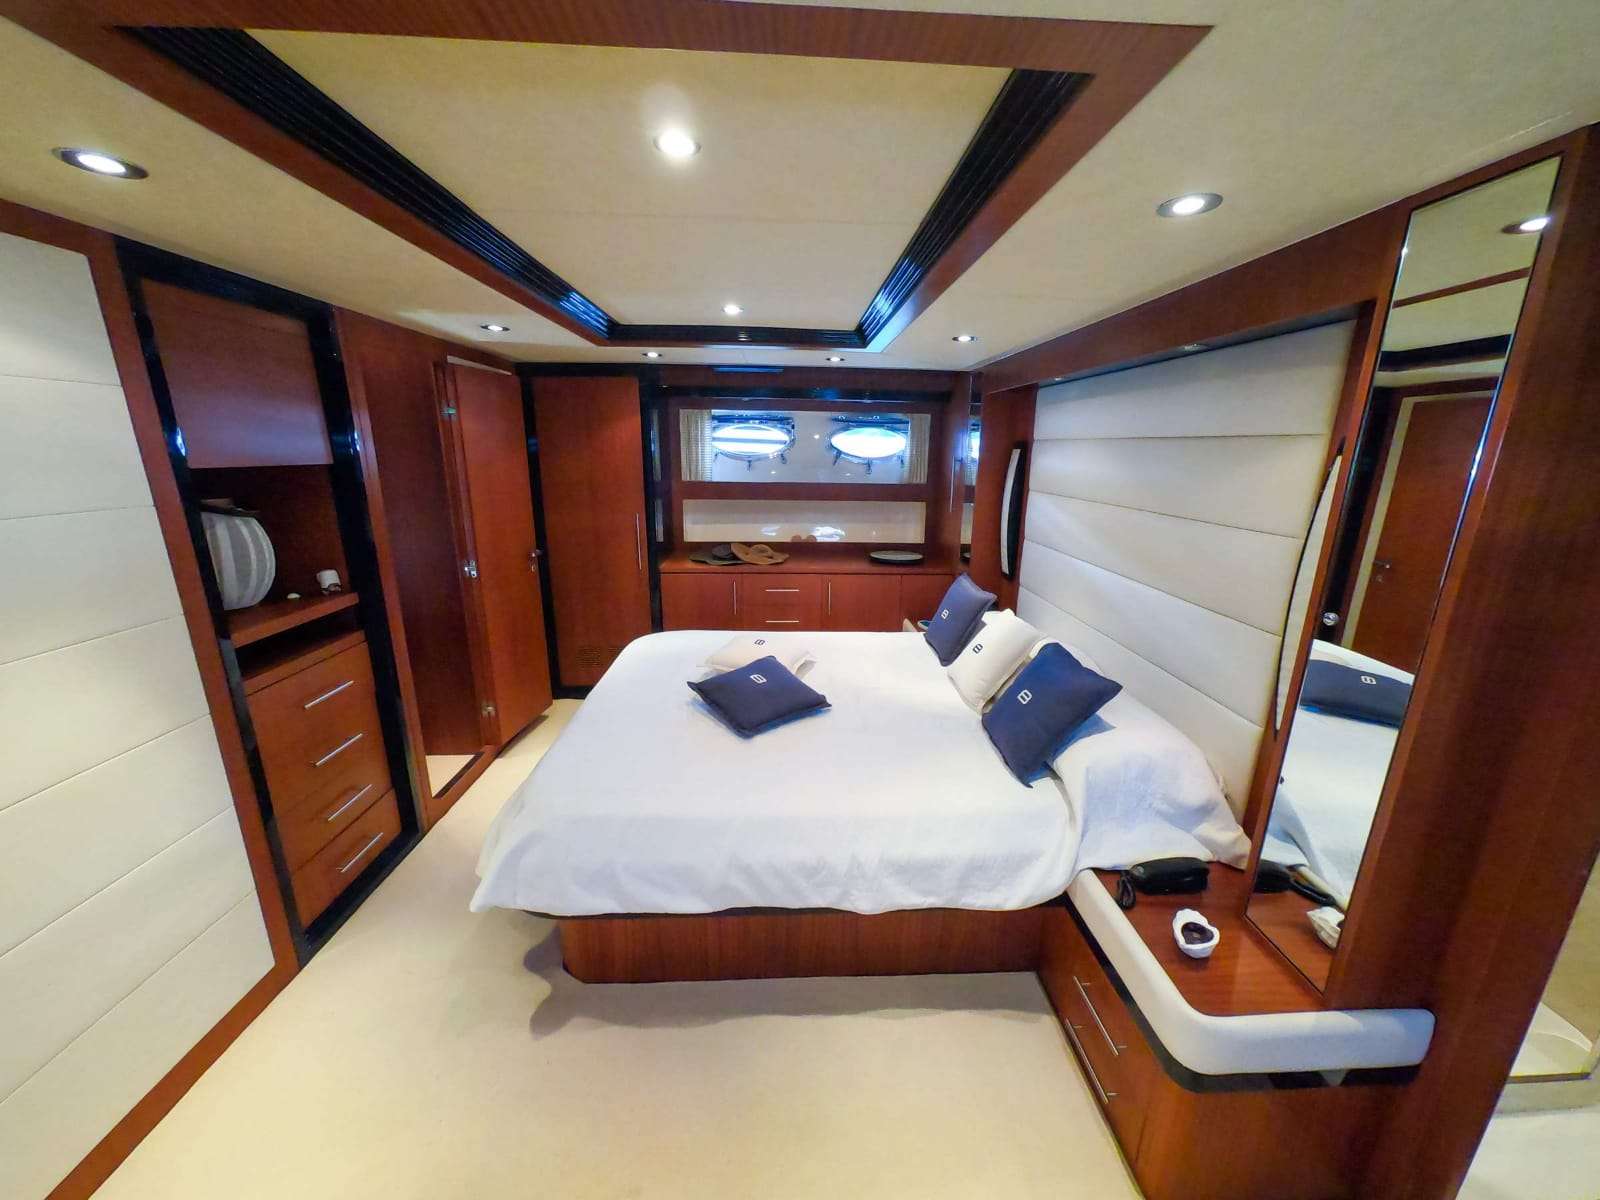 BABLUC Yacht Charter - Master Cabin